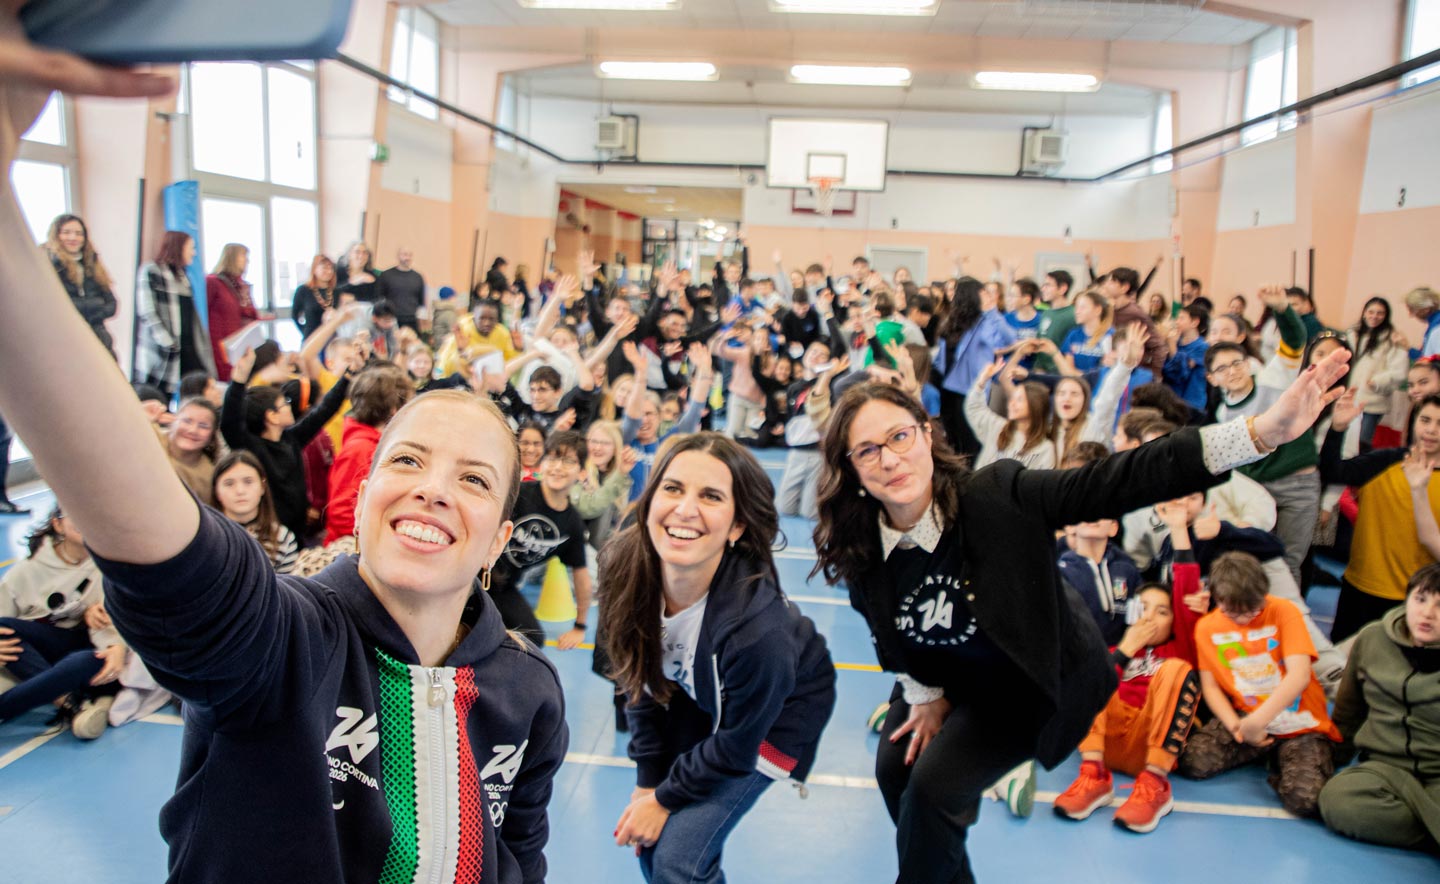 Mitarbeiter von Milano Cortina 2026 und Carolina Kostner bei einem Selfie mit Kindern in einer Schulsporthalle